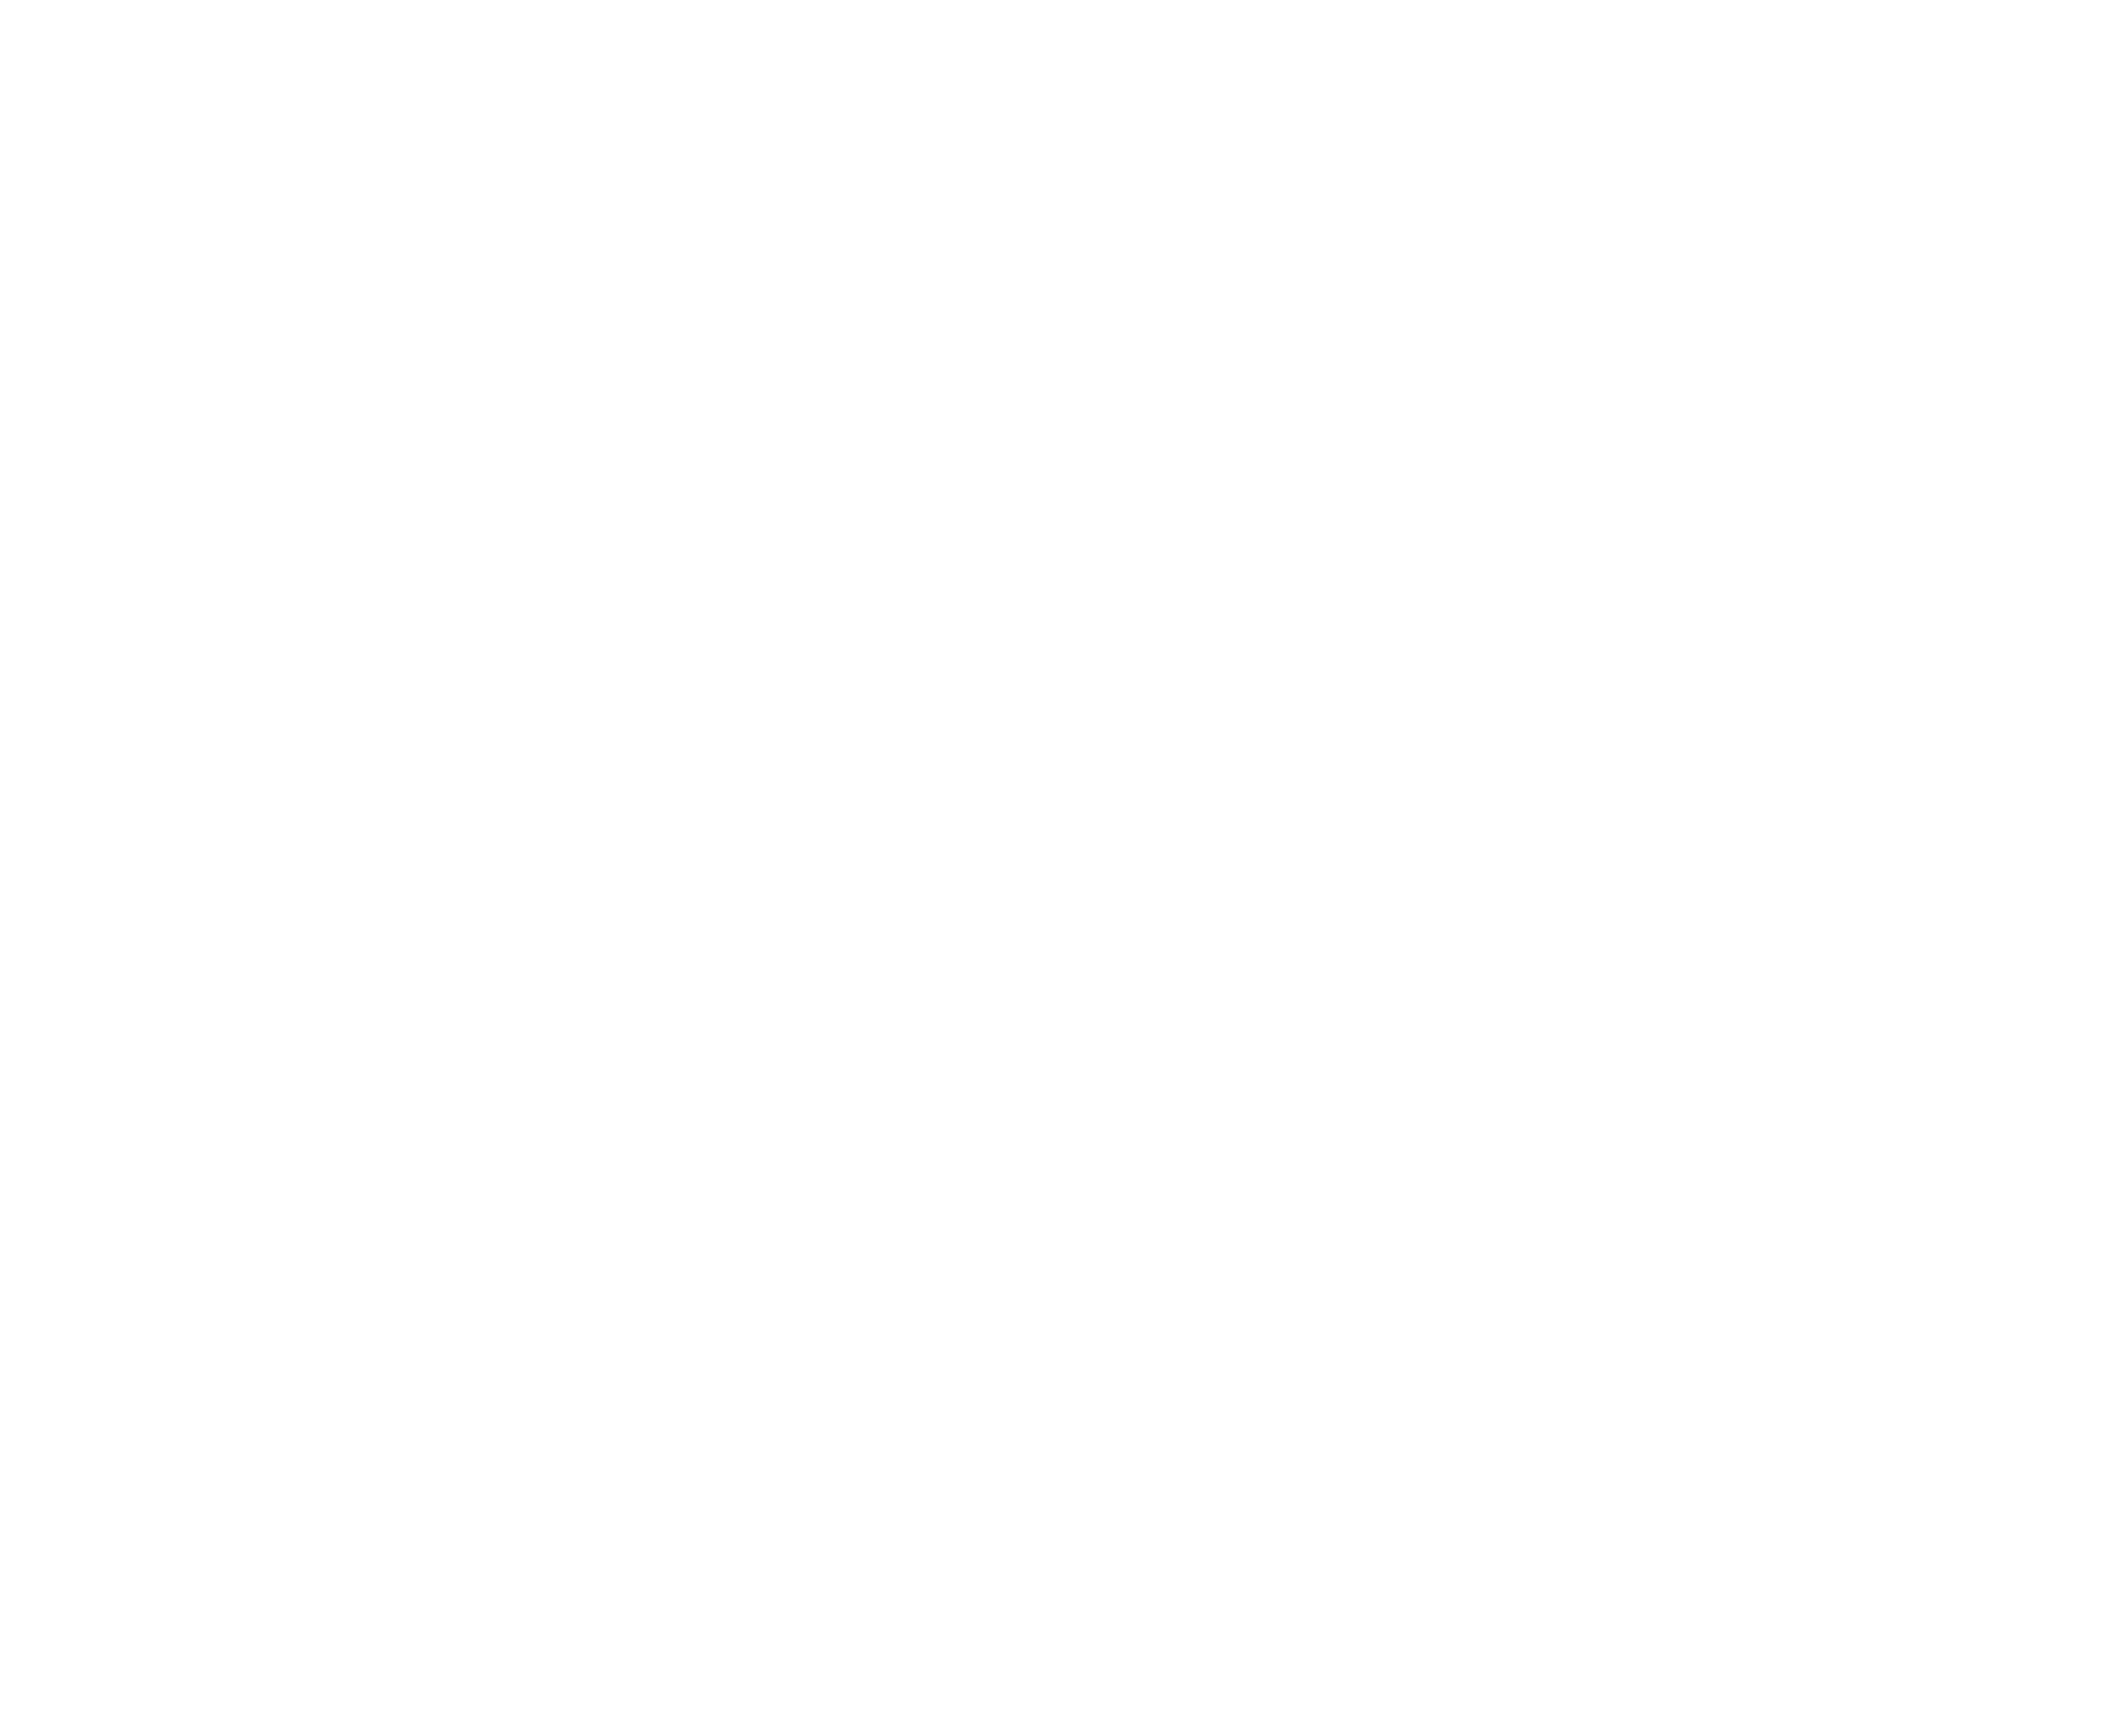 Stream HGTV Dream Home discovery+